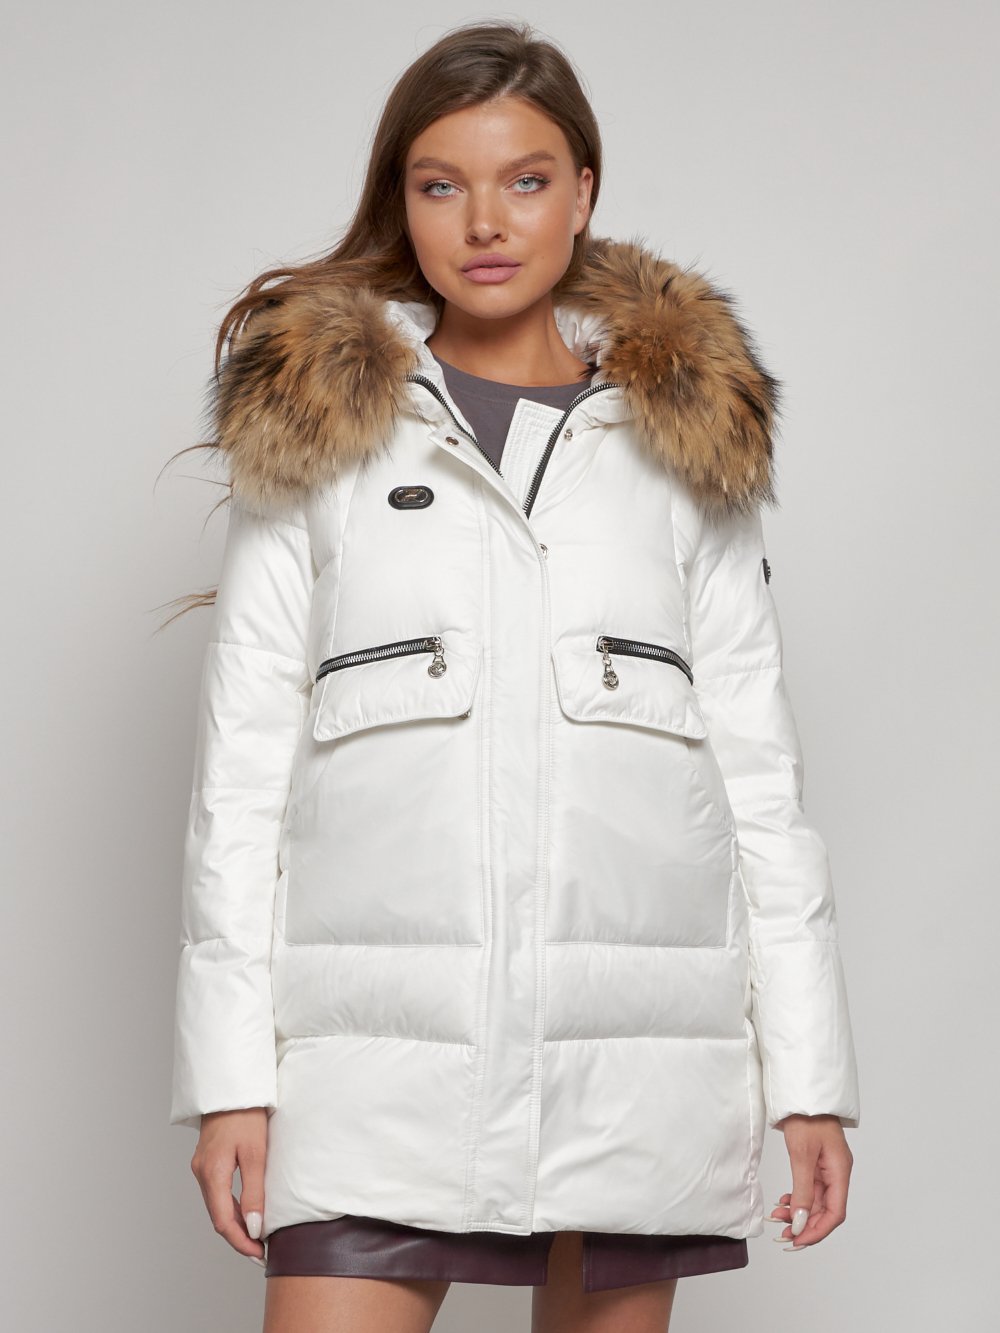 Купить куртку женскую зимнюю оптом от производителя недорого в Москве 132298Bl 1